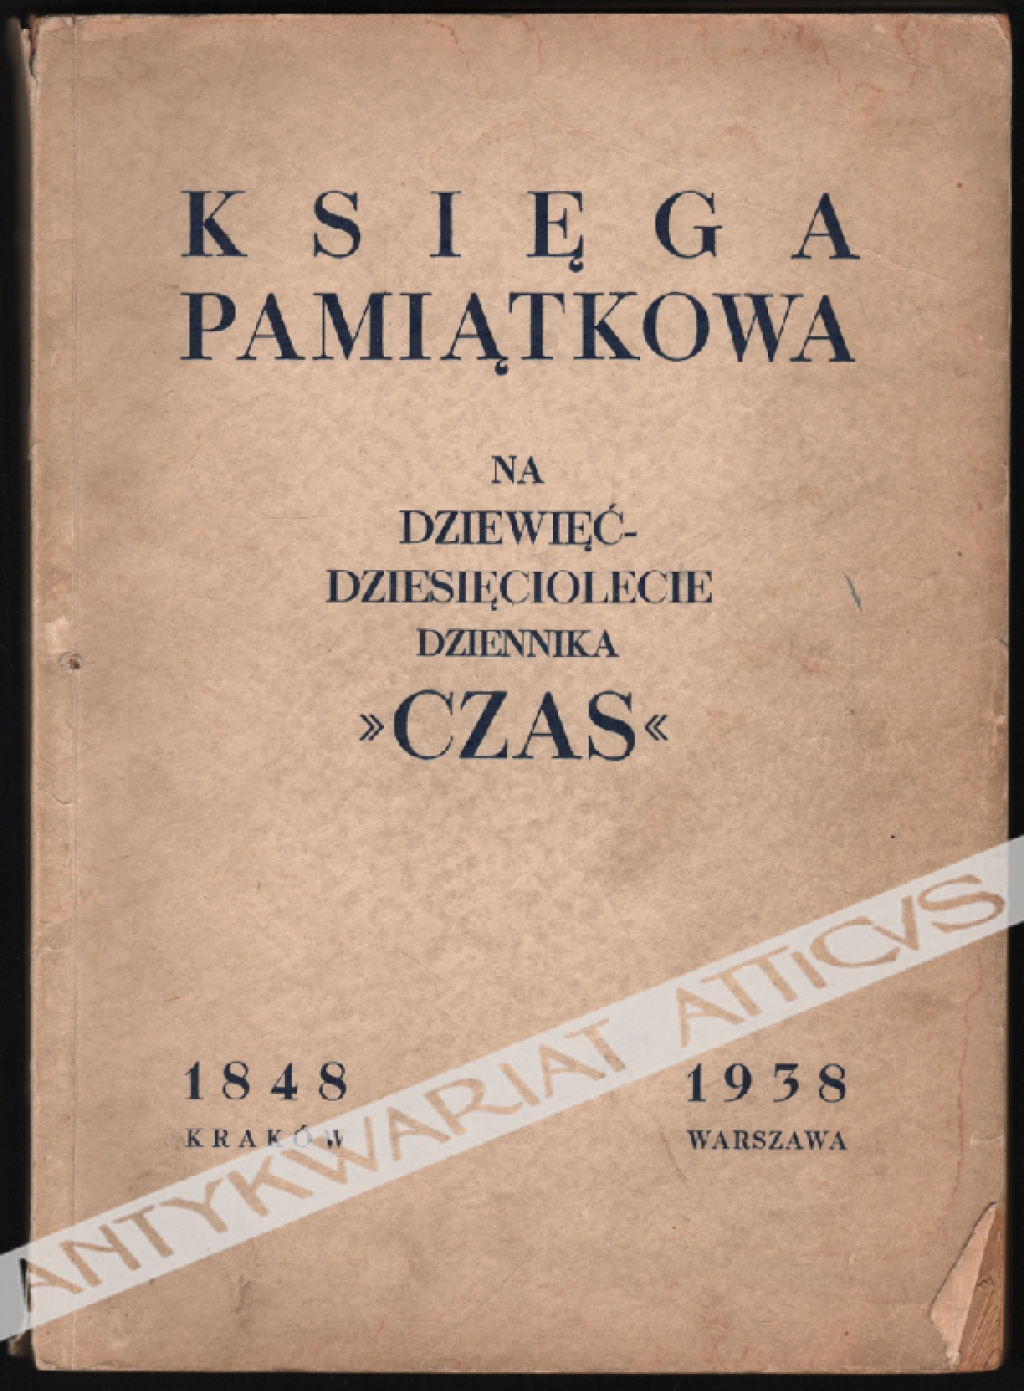 Księga pamiątkowa na dziewięćdziesięciolecie dziennika "Czas". Kraków 1848 - Warszawa 1938